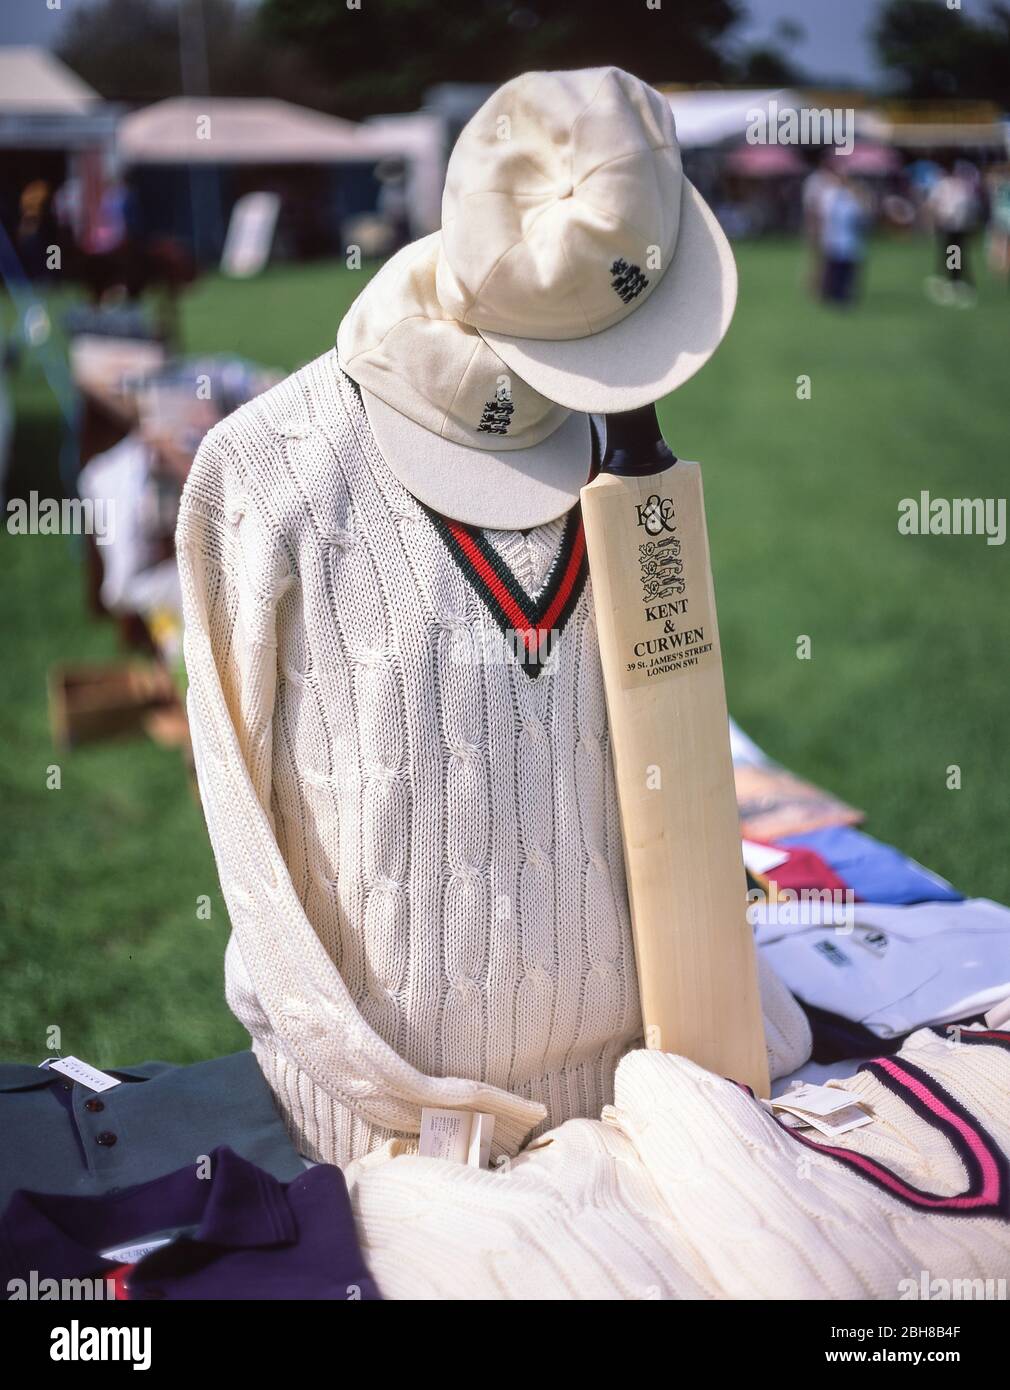 Cavalier de cricket, batte et casquette sur place au Royal Windsor Horse Show, Windsor, Berkshire, Angleterre, Royaume-Uni Banque D'Images